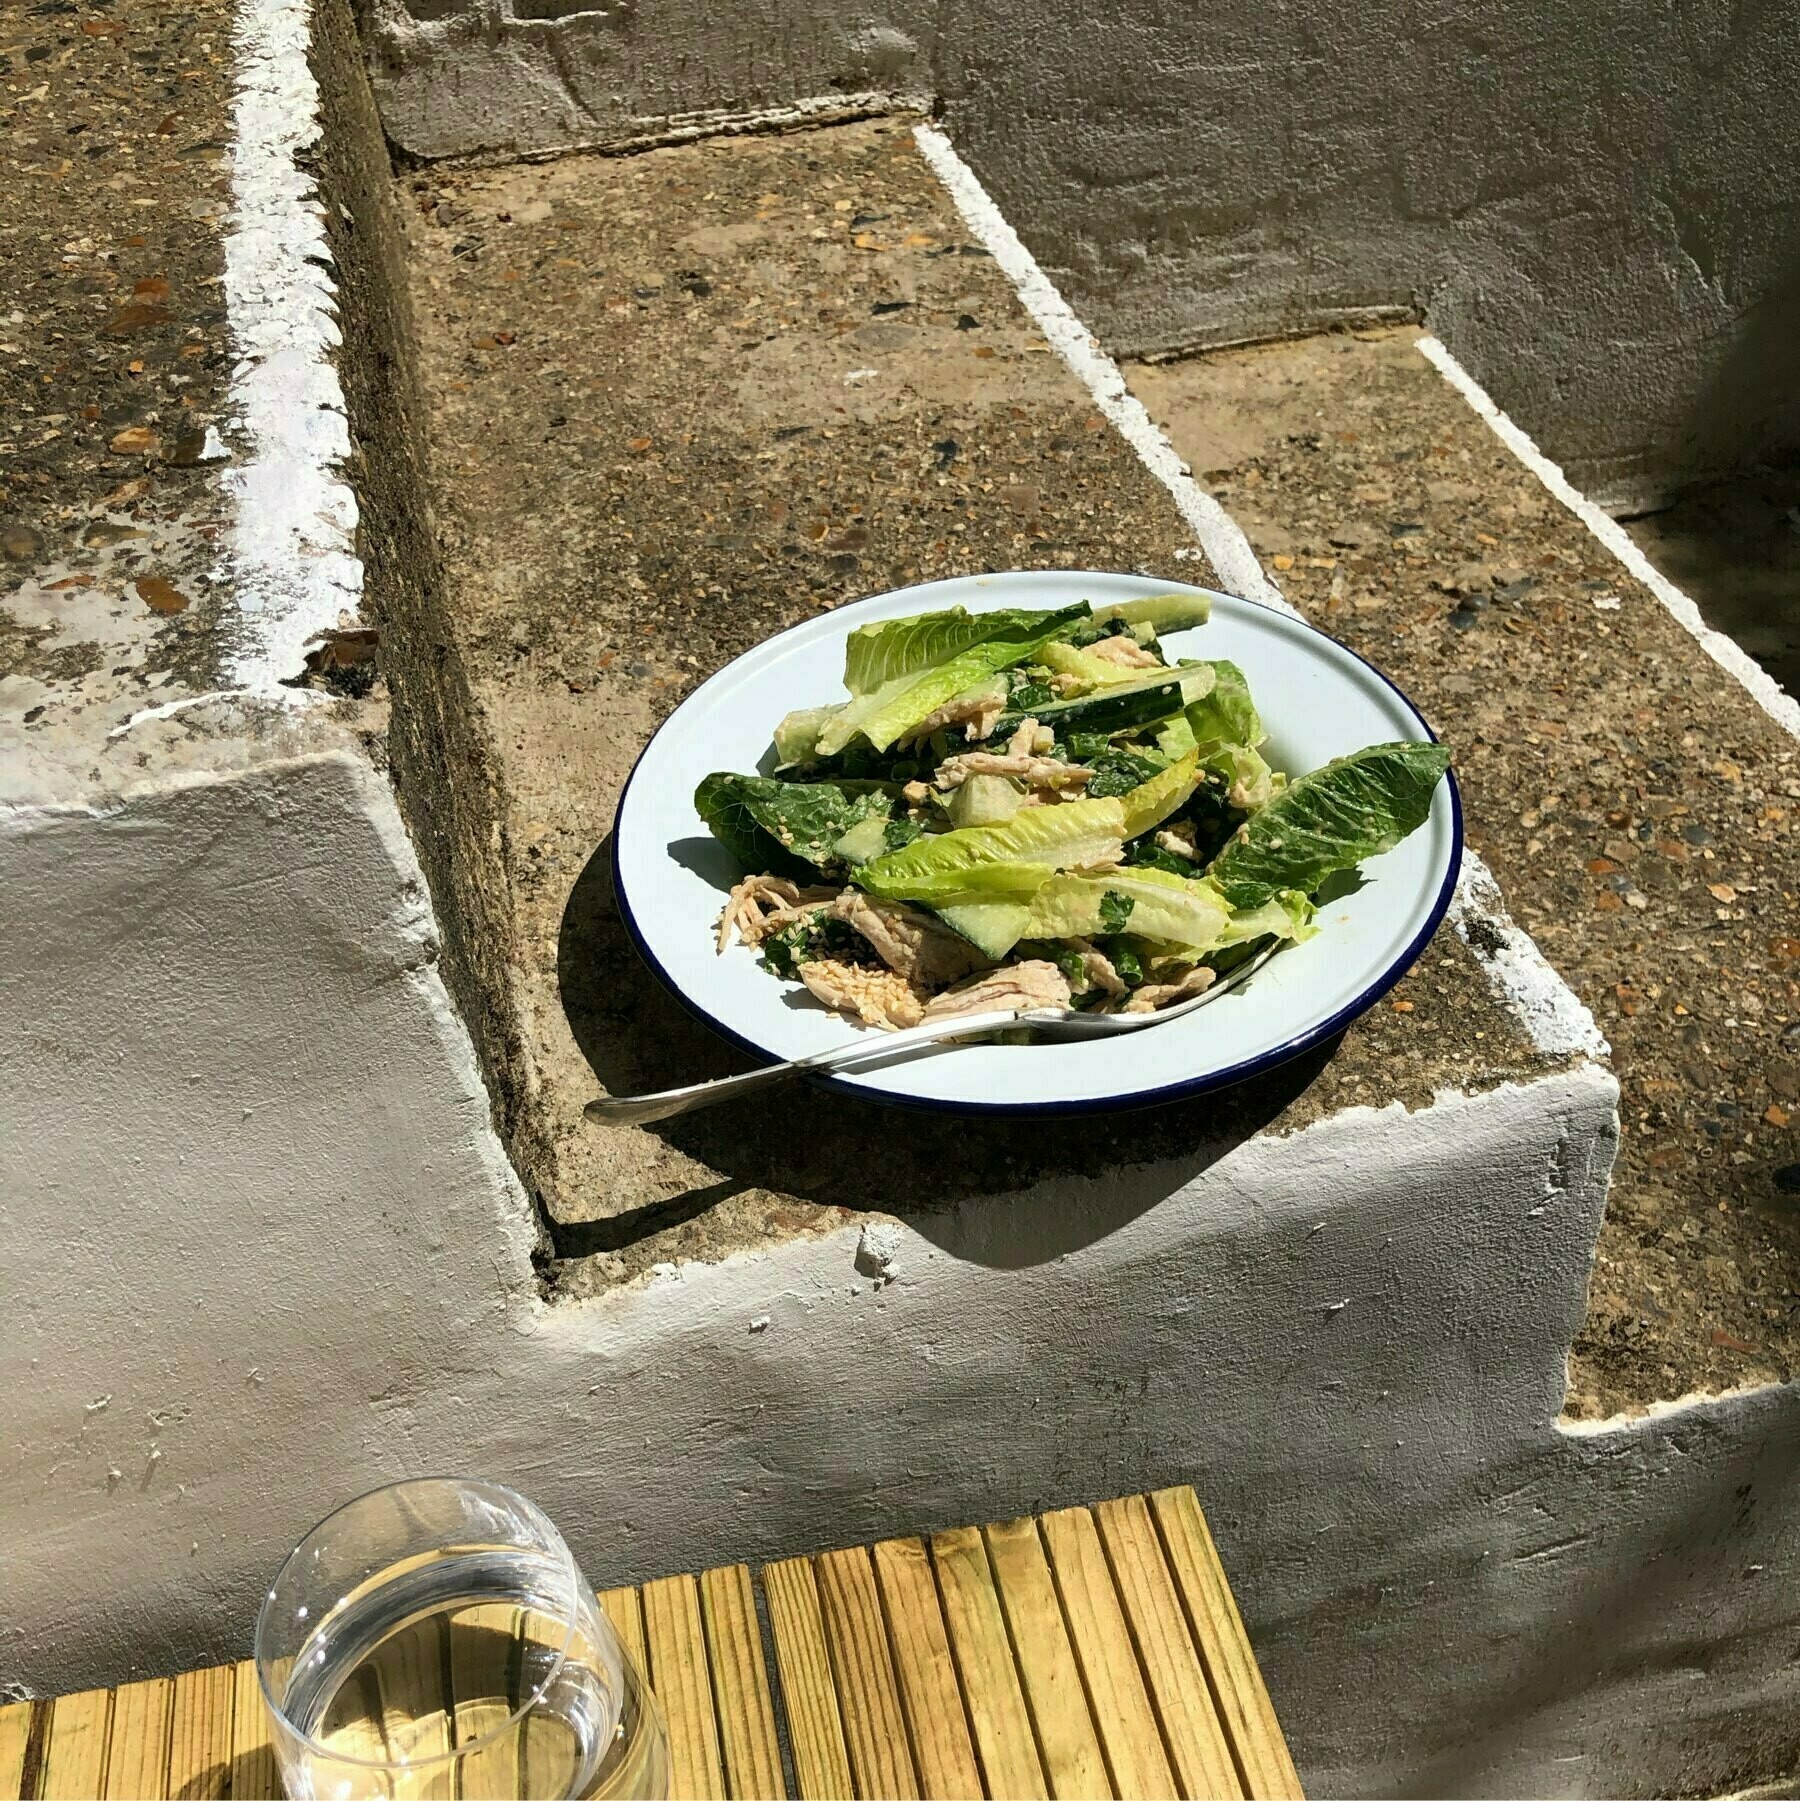 Salad on doorstep